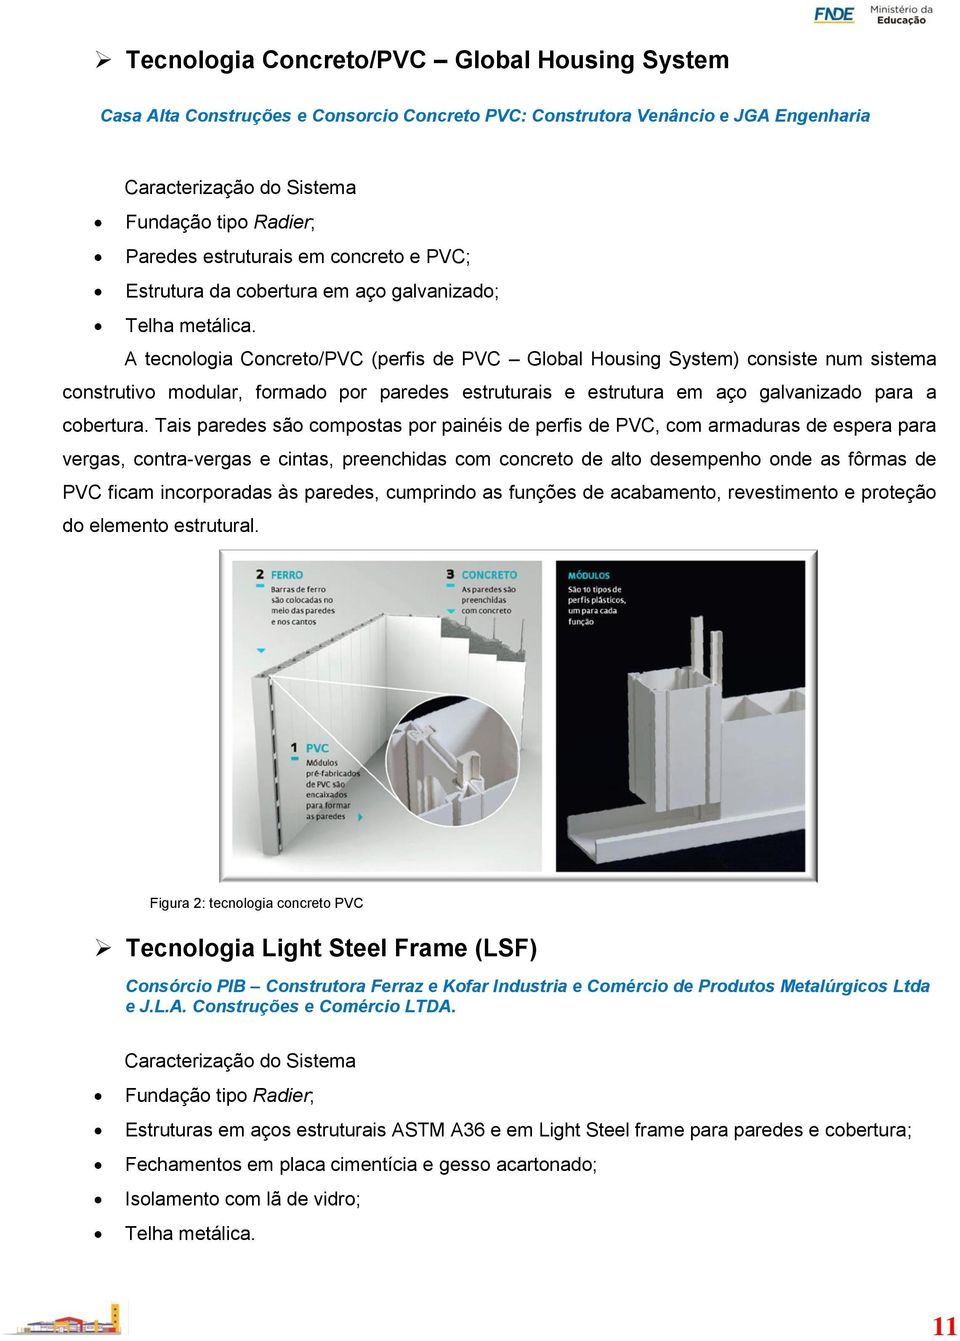 A tecnologia Concreto/PVC (perfis de PVC Global Housing System) consiste num sistema construtivo modular, formado por paredes estruturais e estrutura em aço galvanizado para a cobertura.